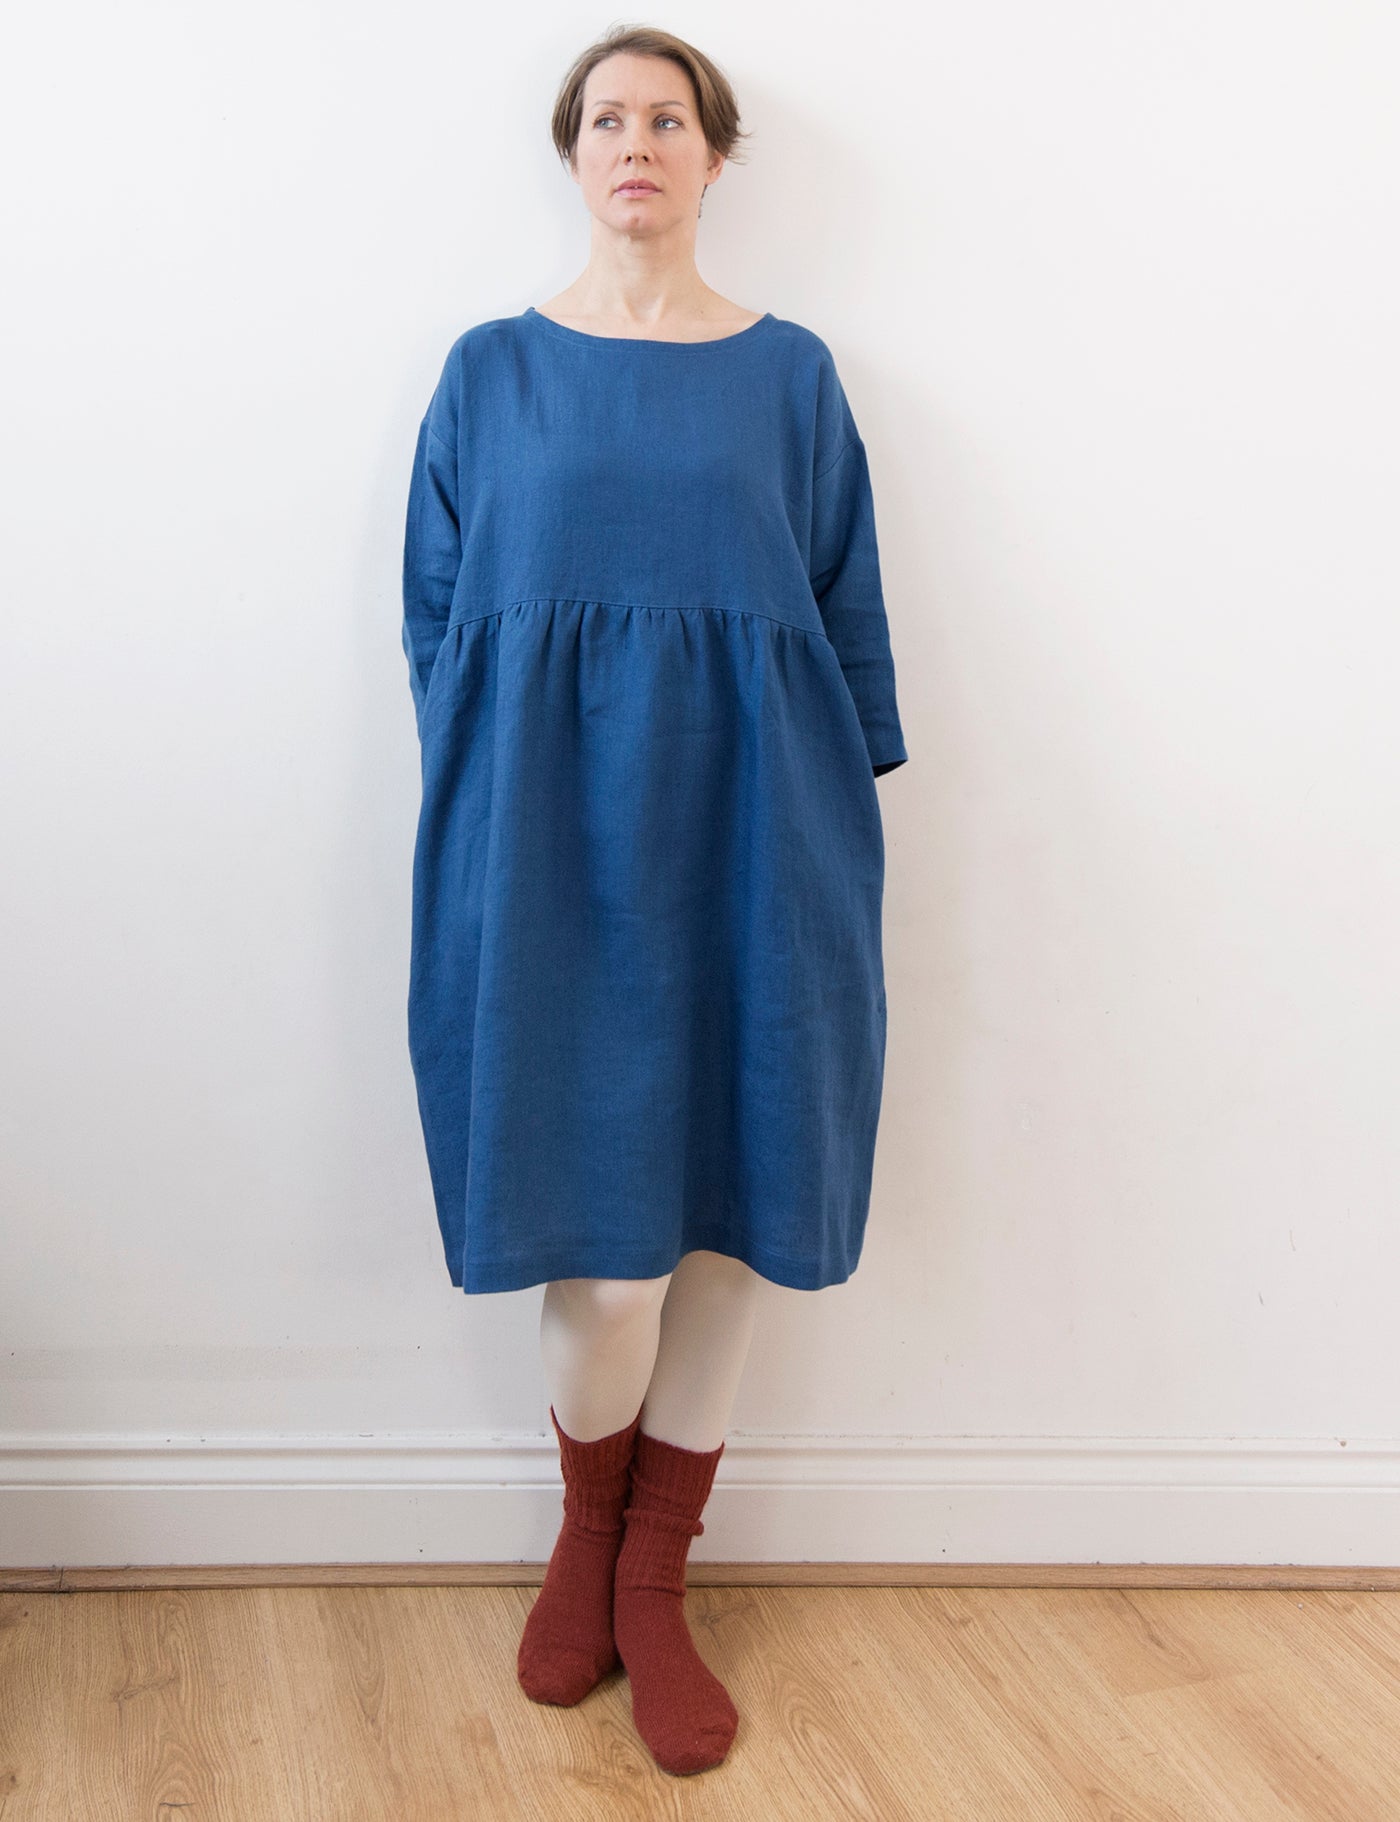 Ocean blue linen dress (knee length)